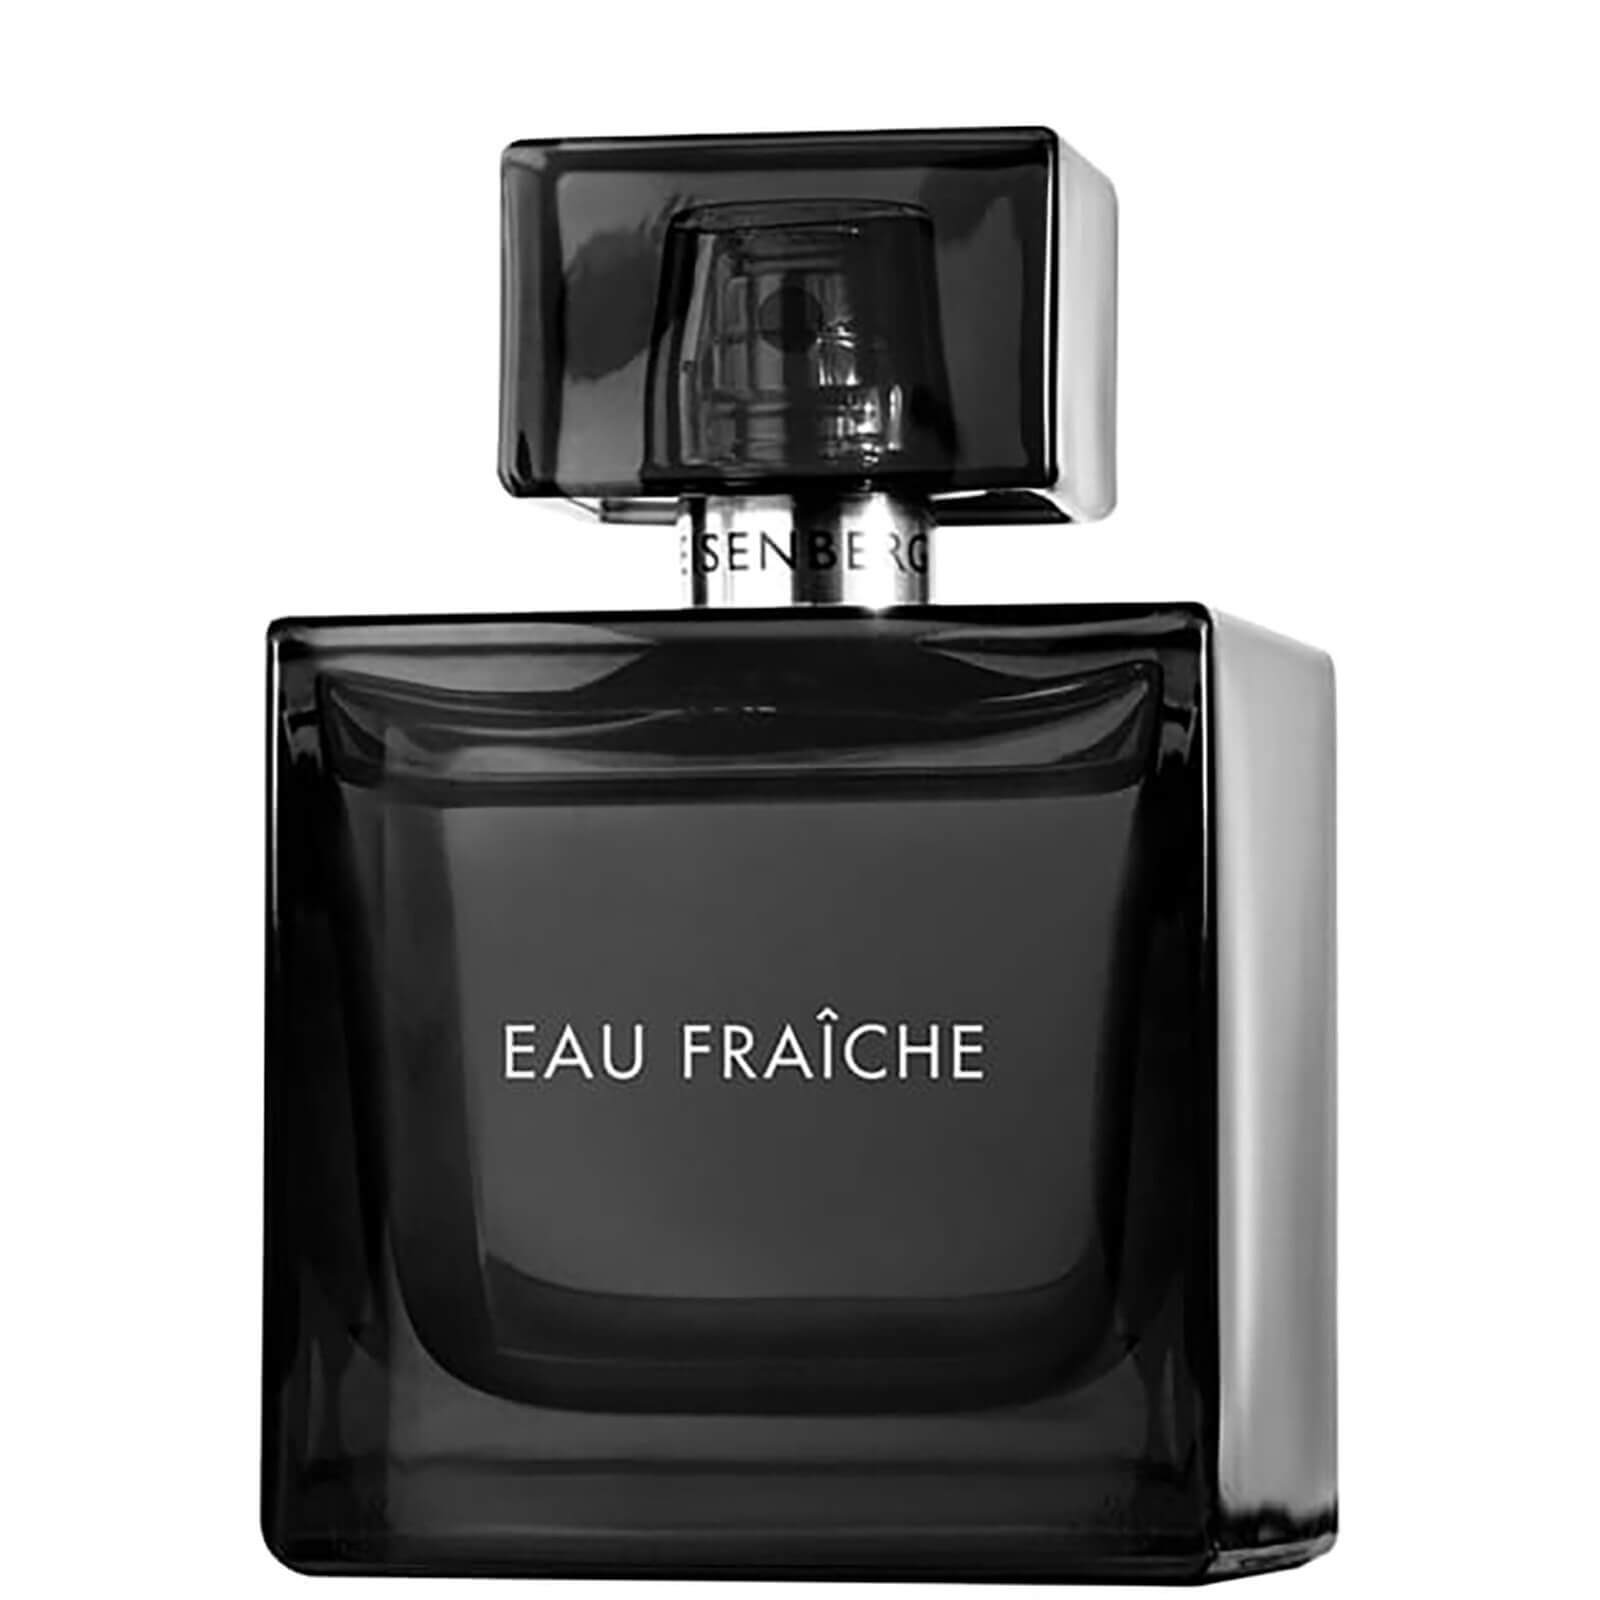 Image of EISENBERG Eau Fraîche Eau de Parfum Profumo for Men 50ml